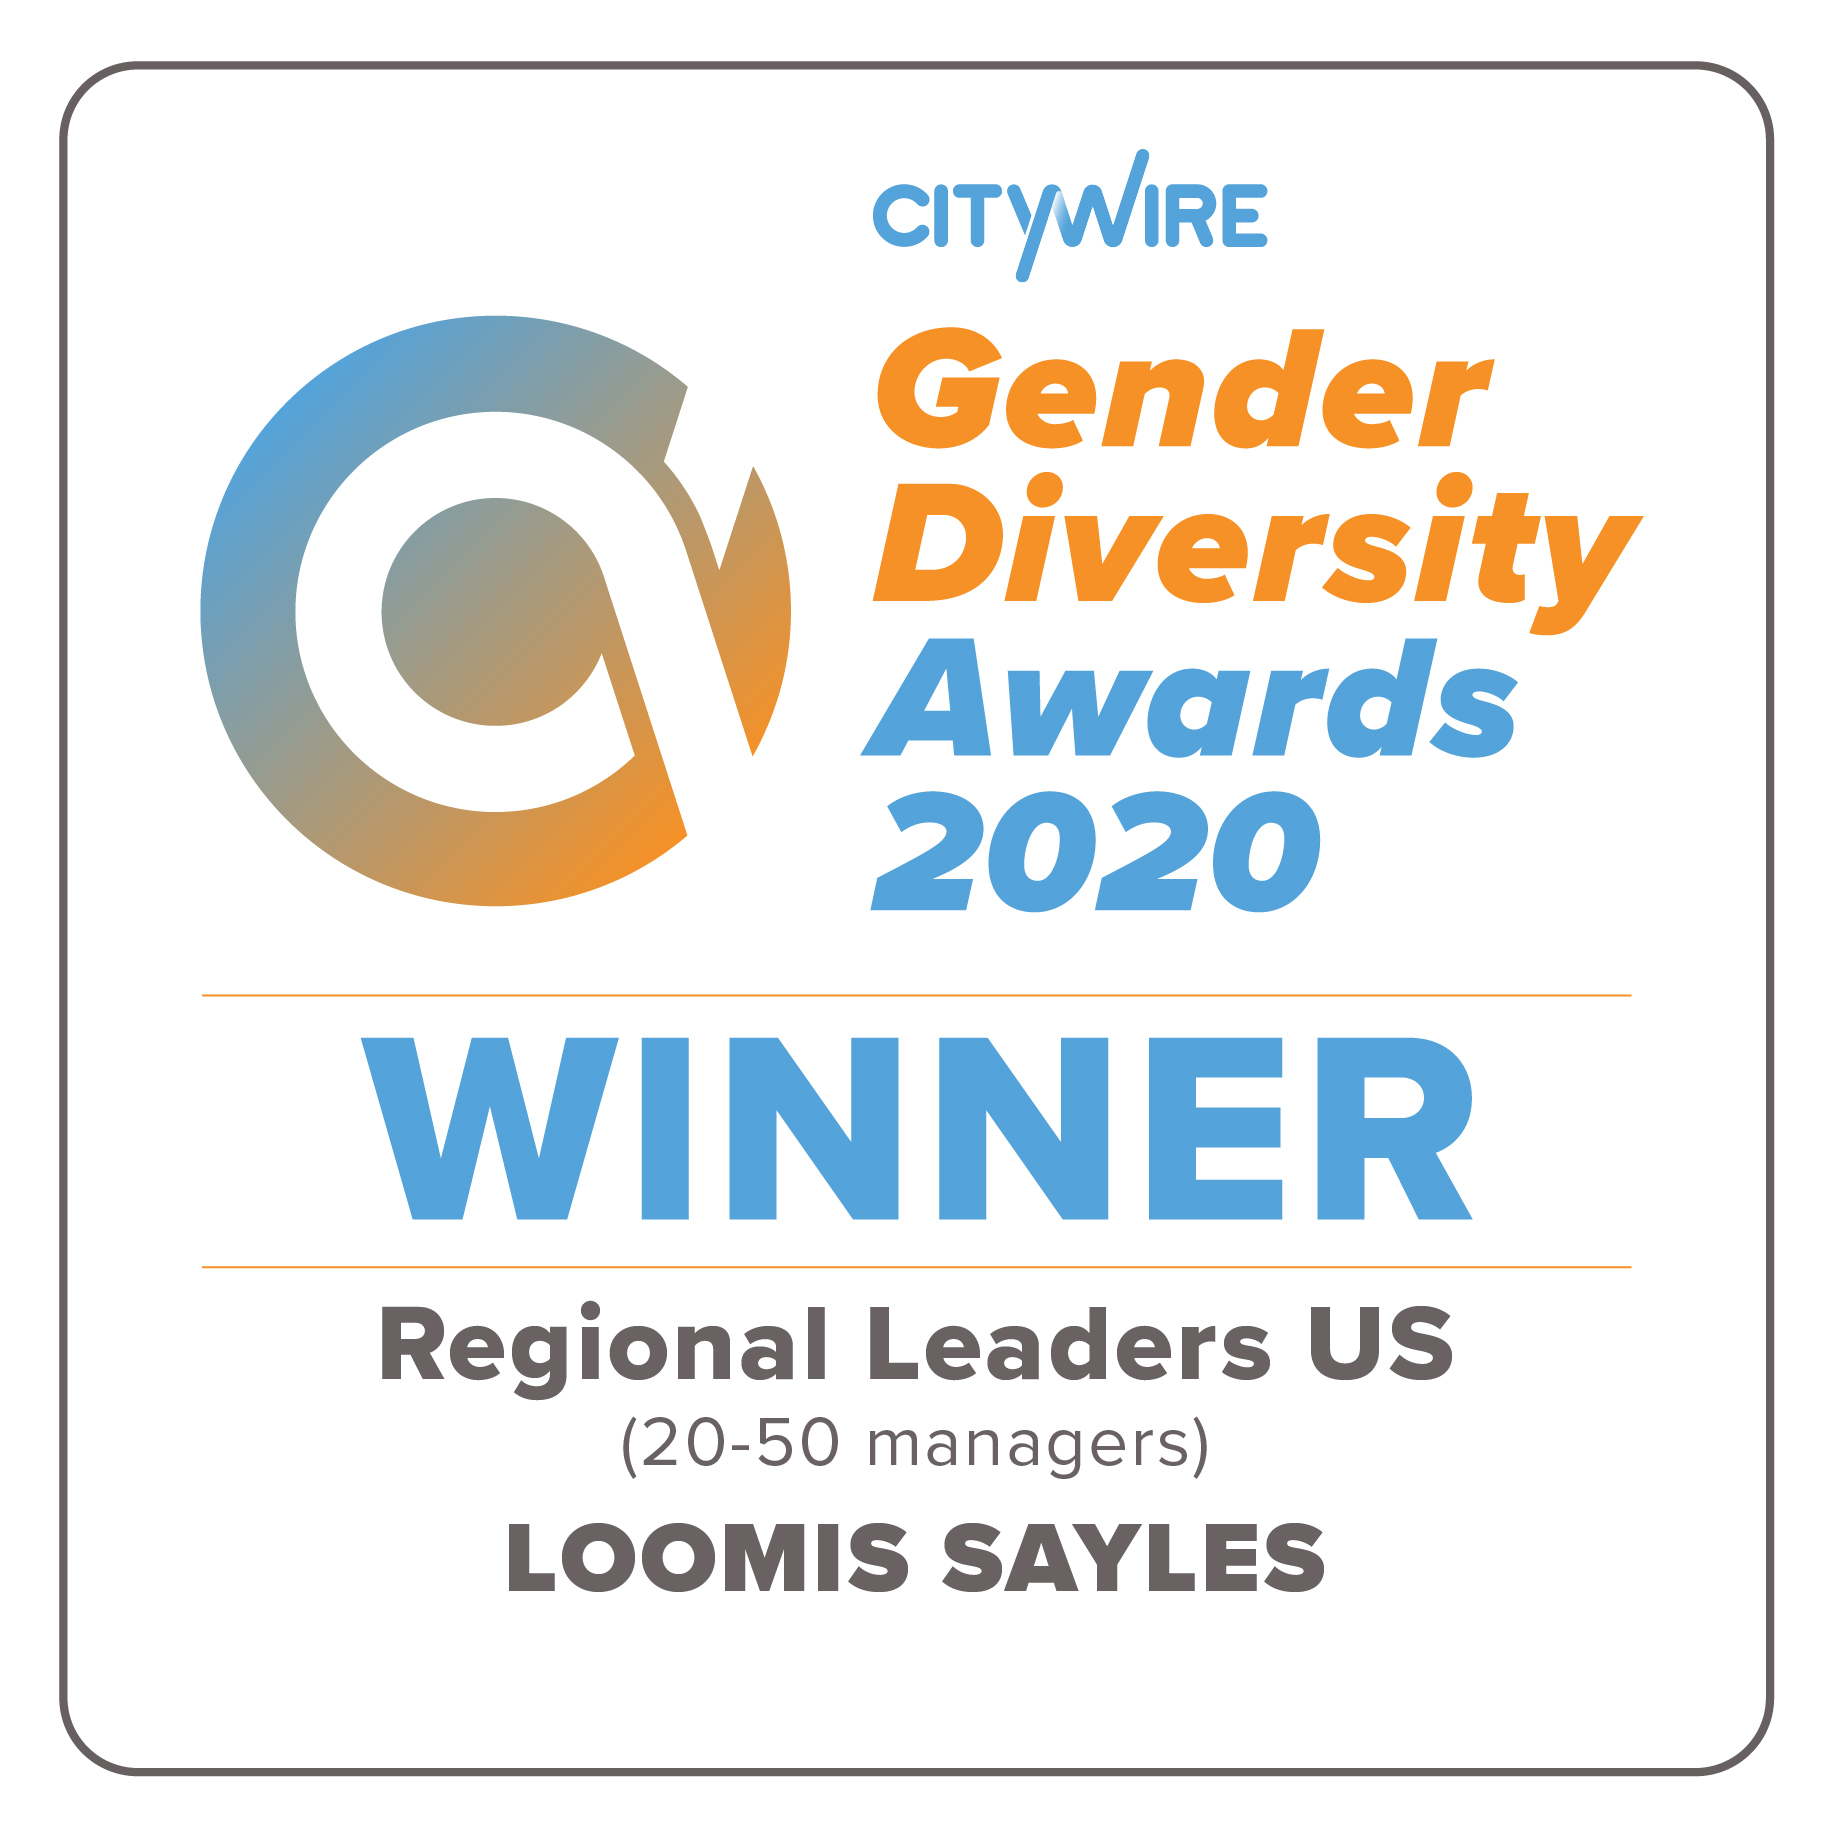 Citywire Names Loomis Sayles US Regional Leader on Gender Diversity